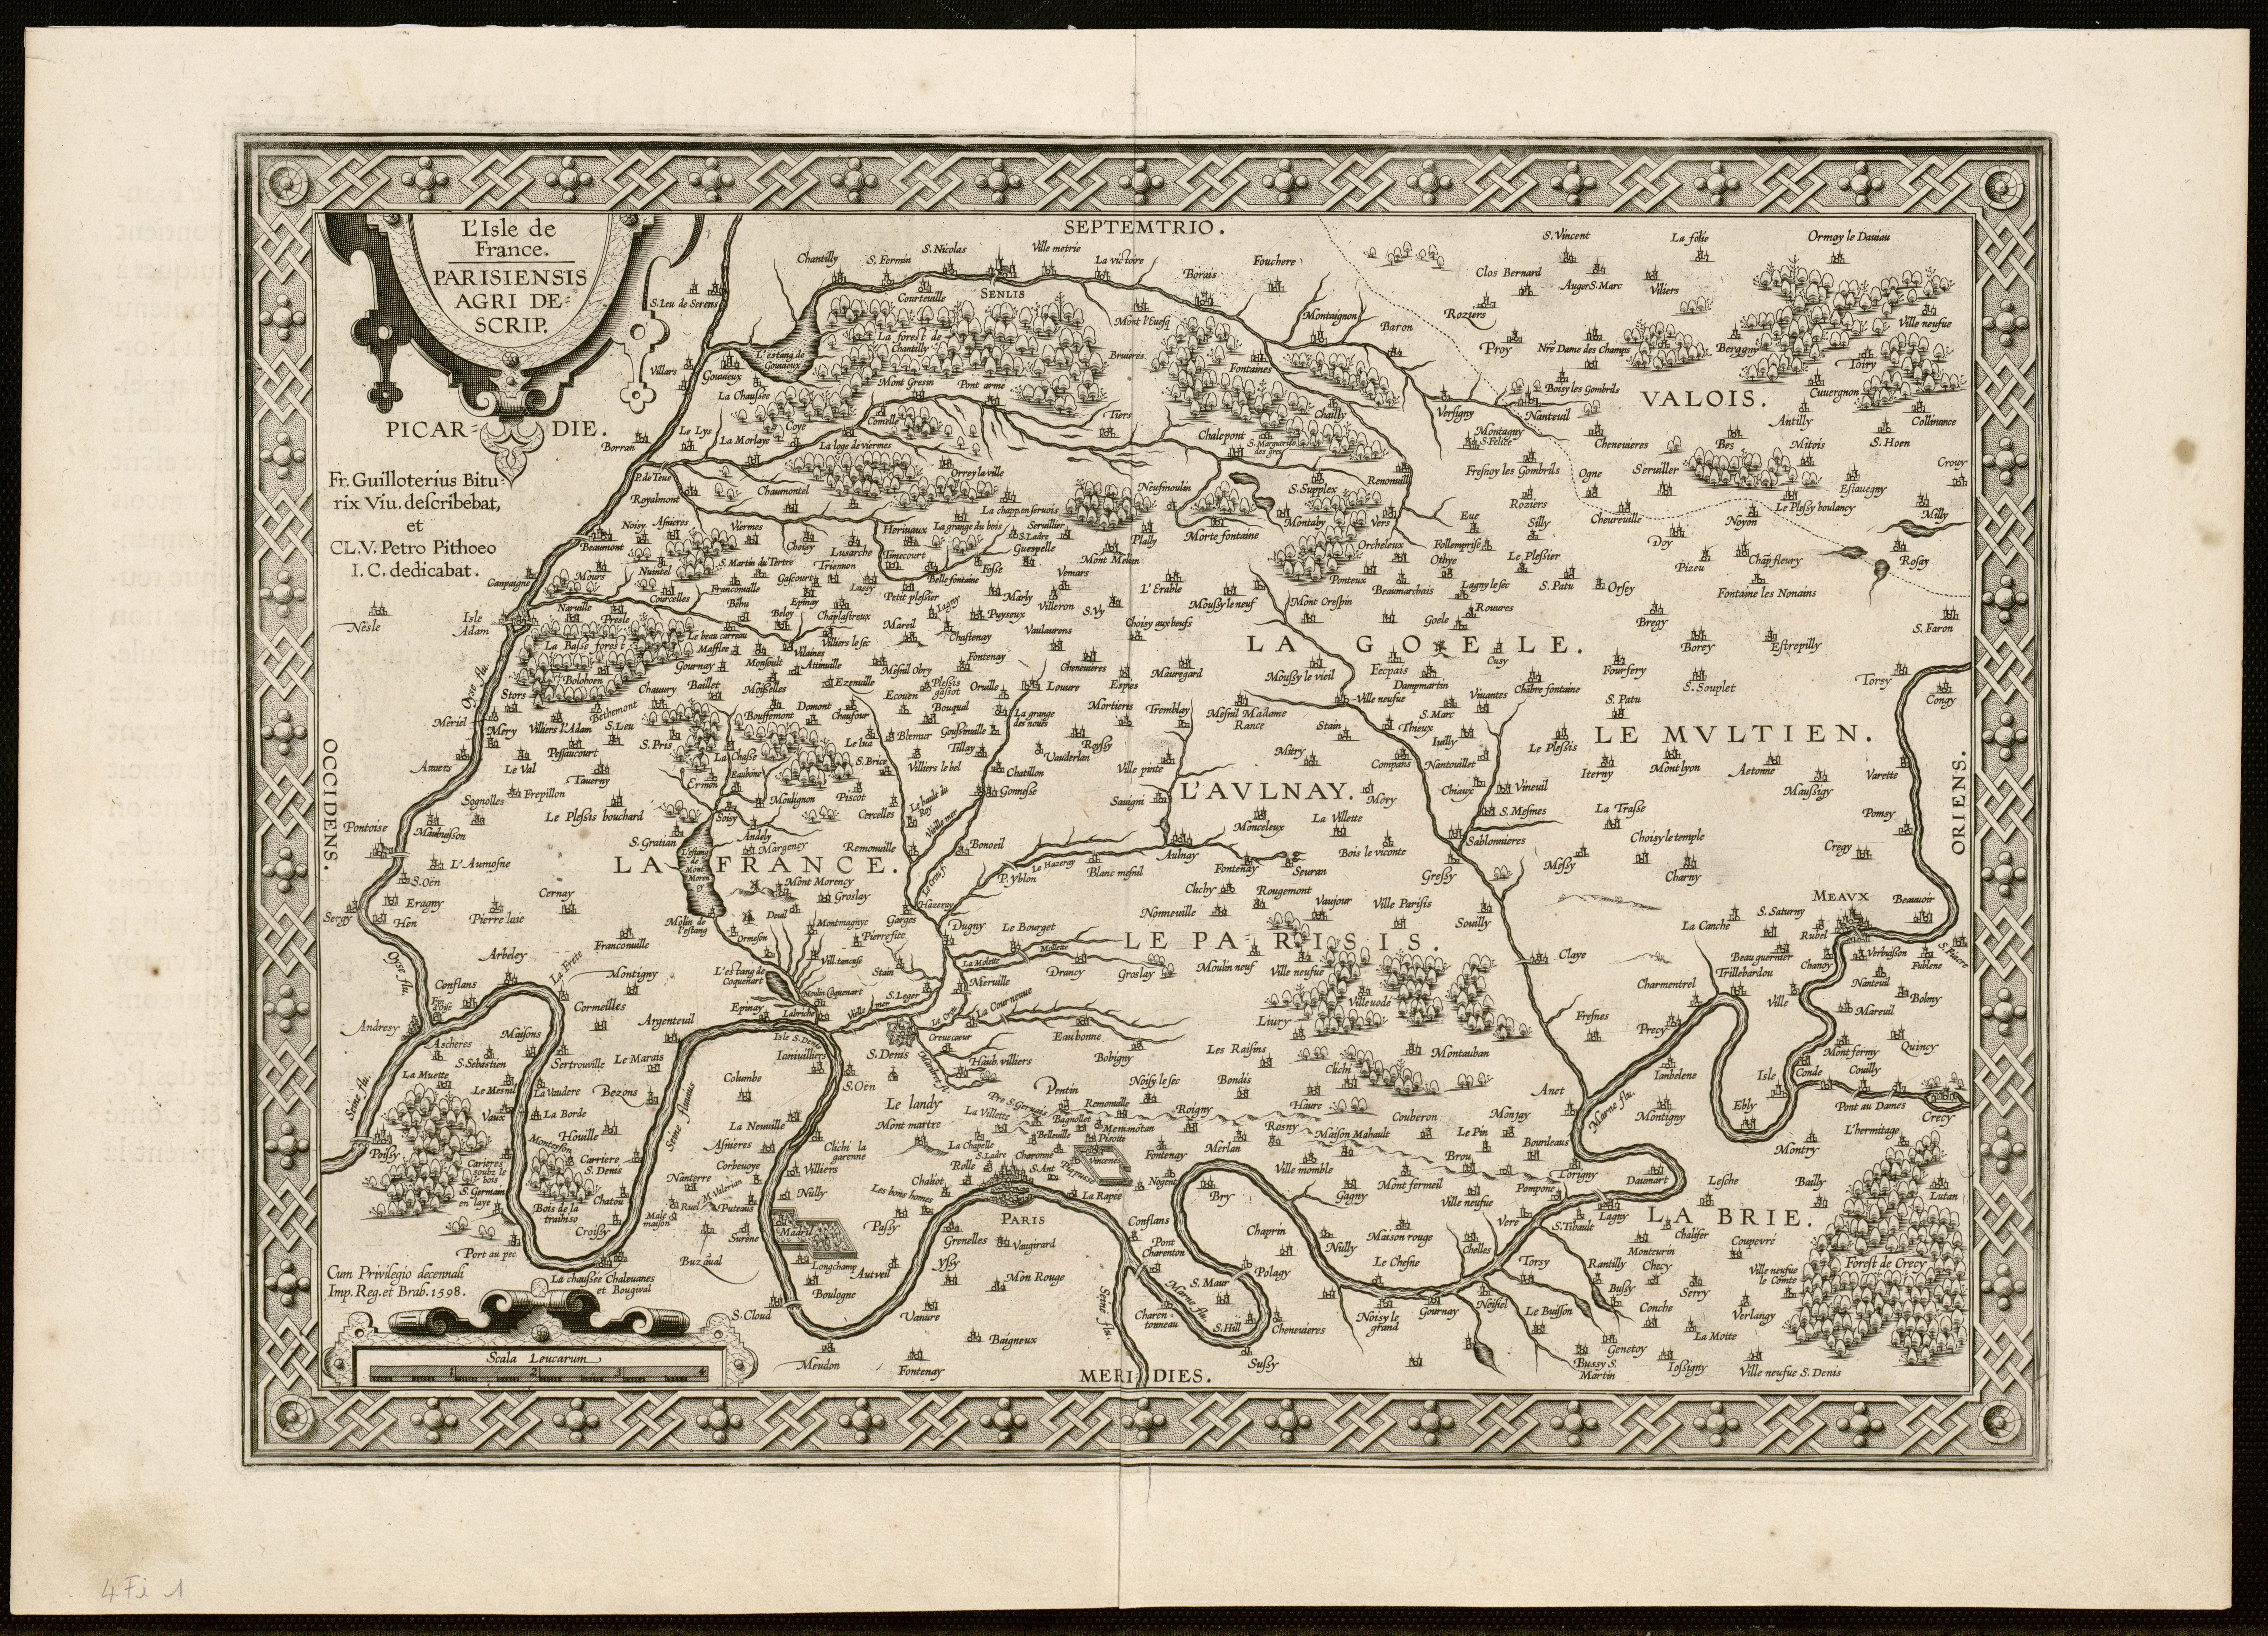 l'Ile-de-France, Parisiensis agri descriptio.1598.